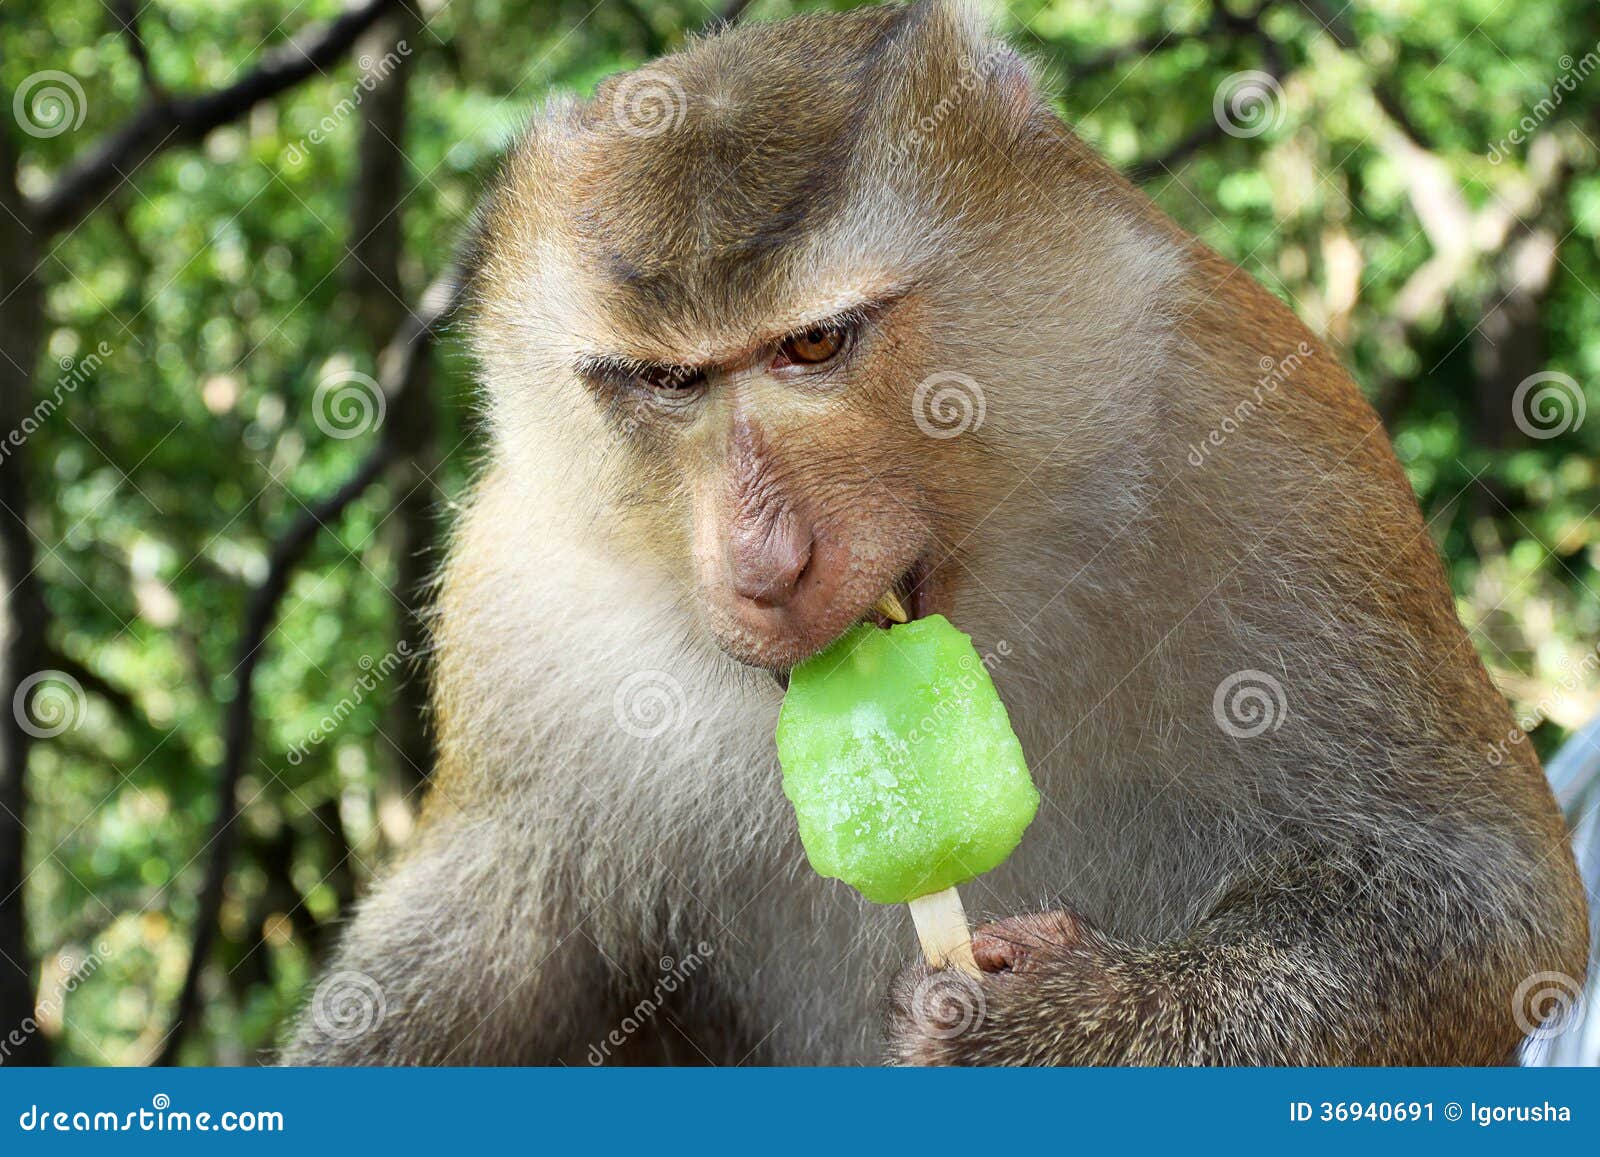 Funny Monkey with Ice Cream Stock Image - Image of fruit, sitting ...